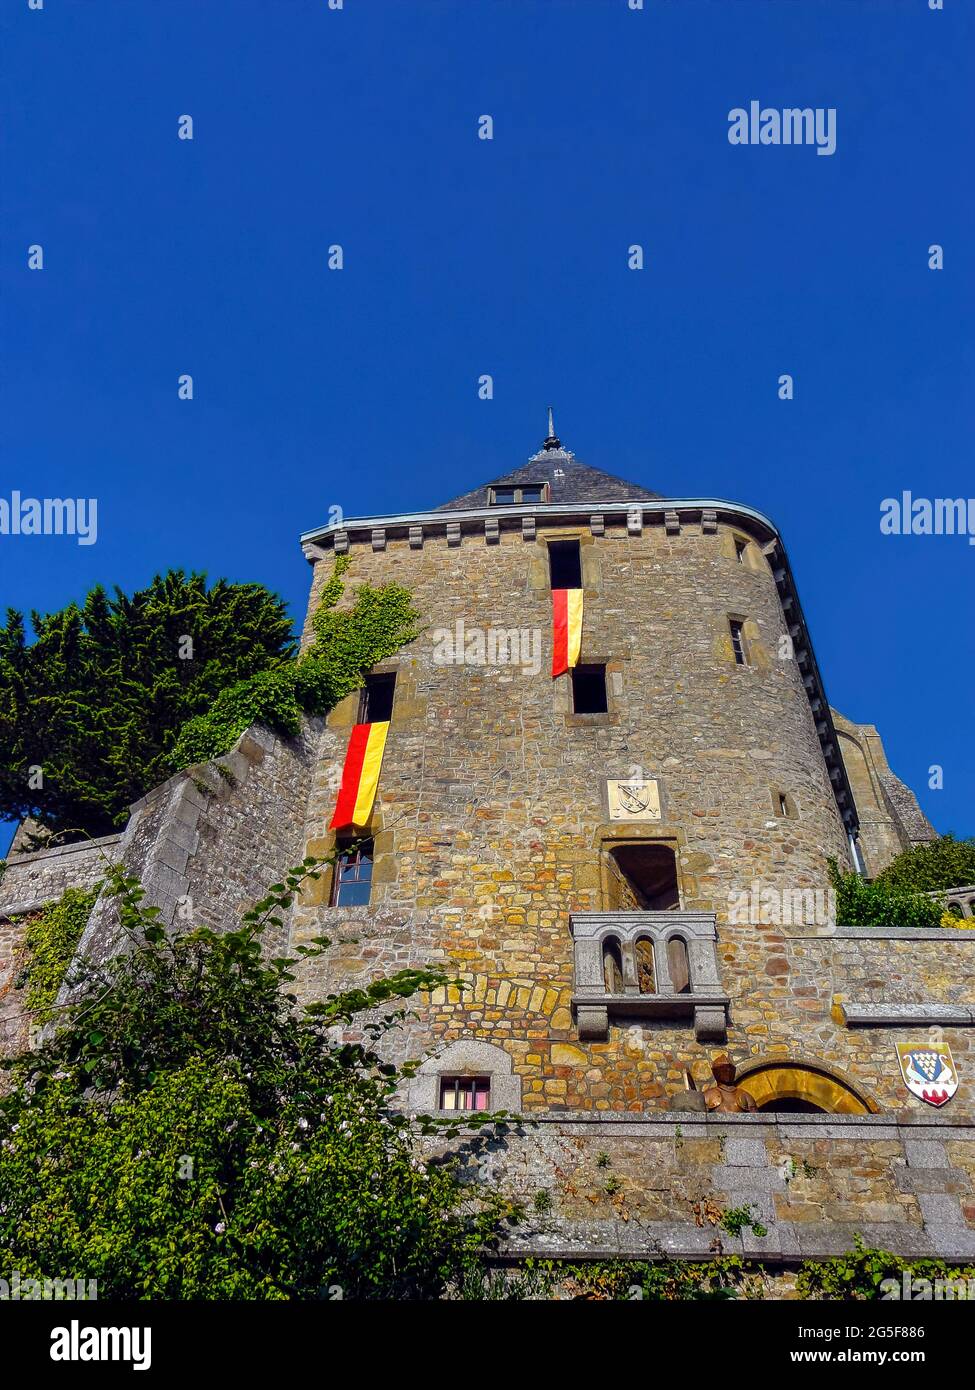 Original como pocos lugares en el mundo, el Mont-Saint-Michel es una paradoja fabulosa. Stockfoto